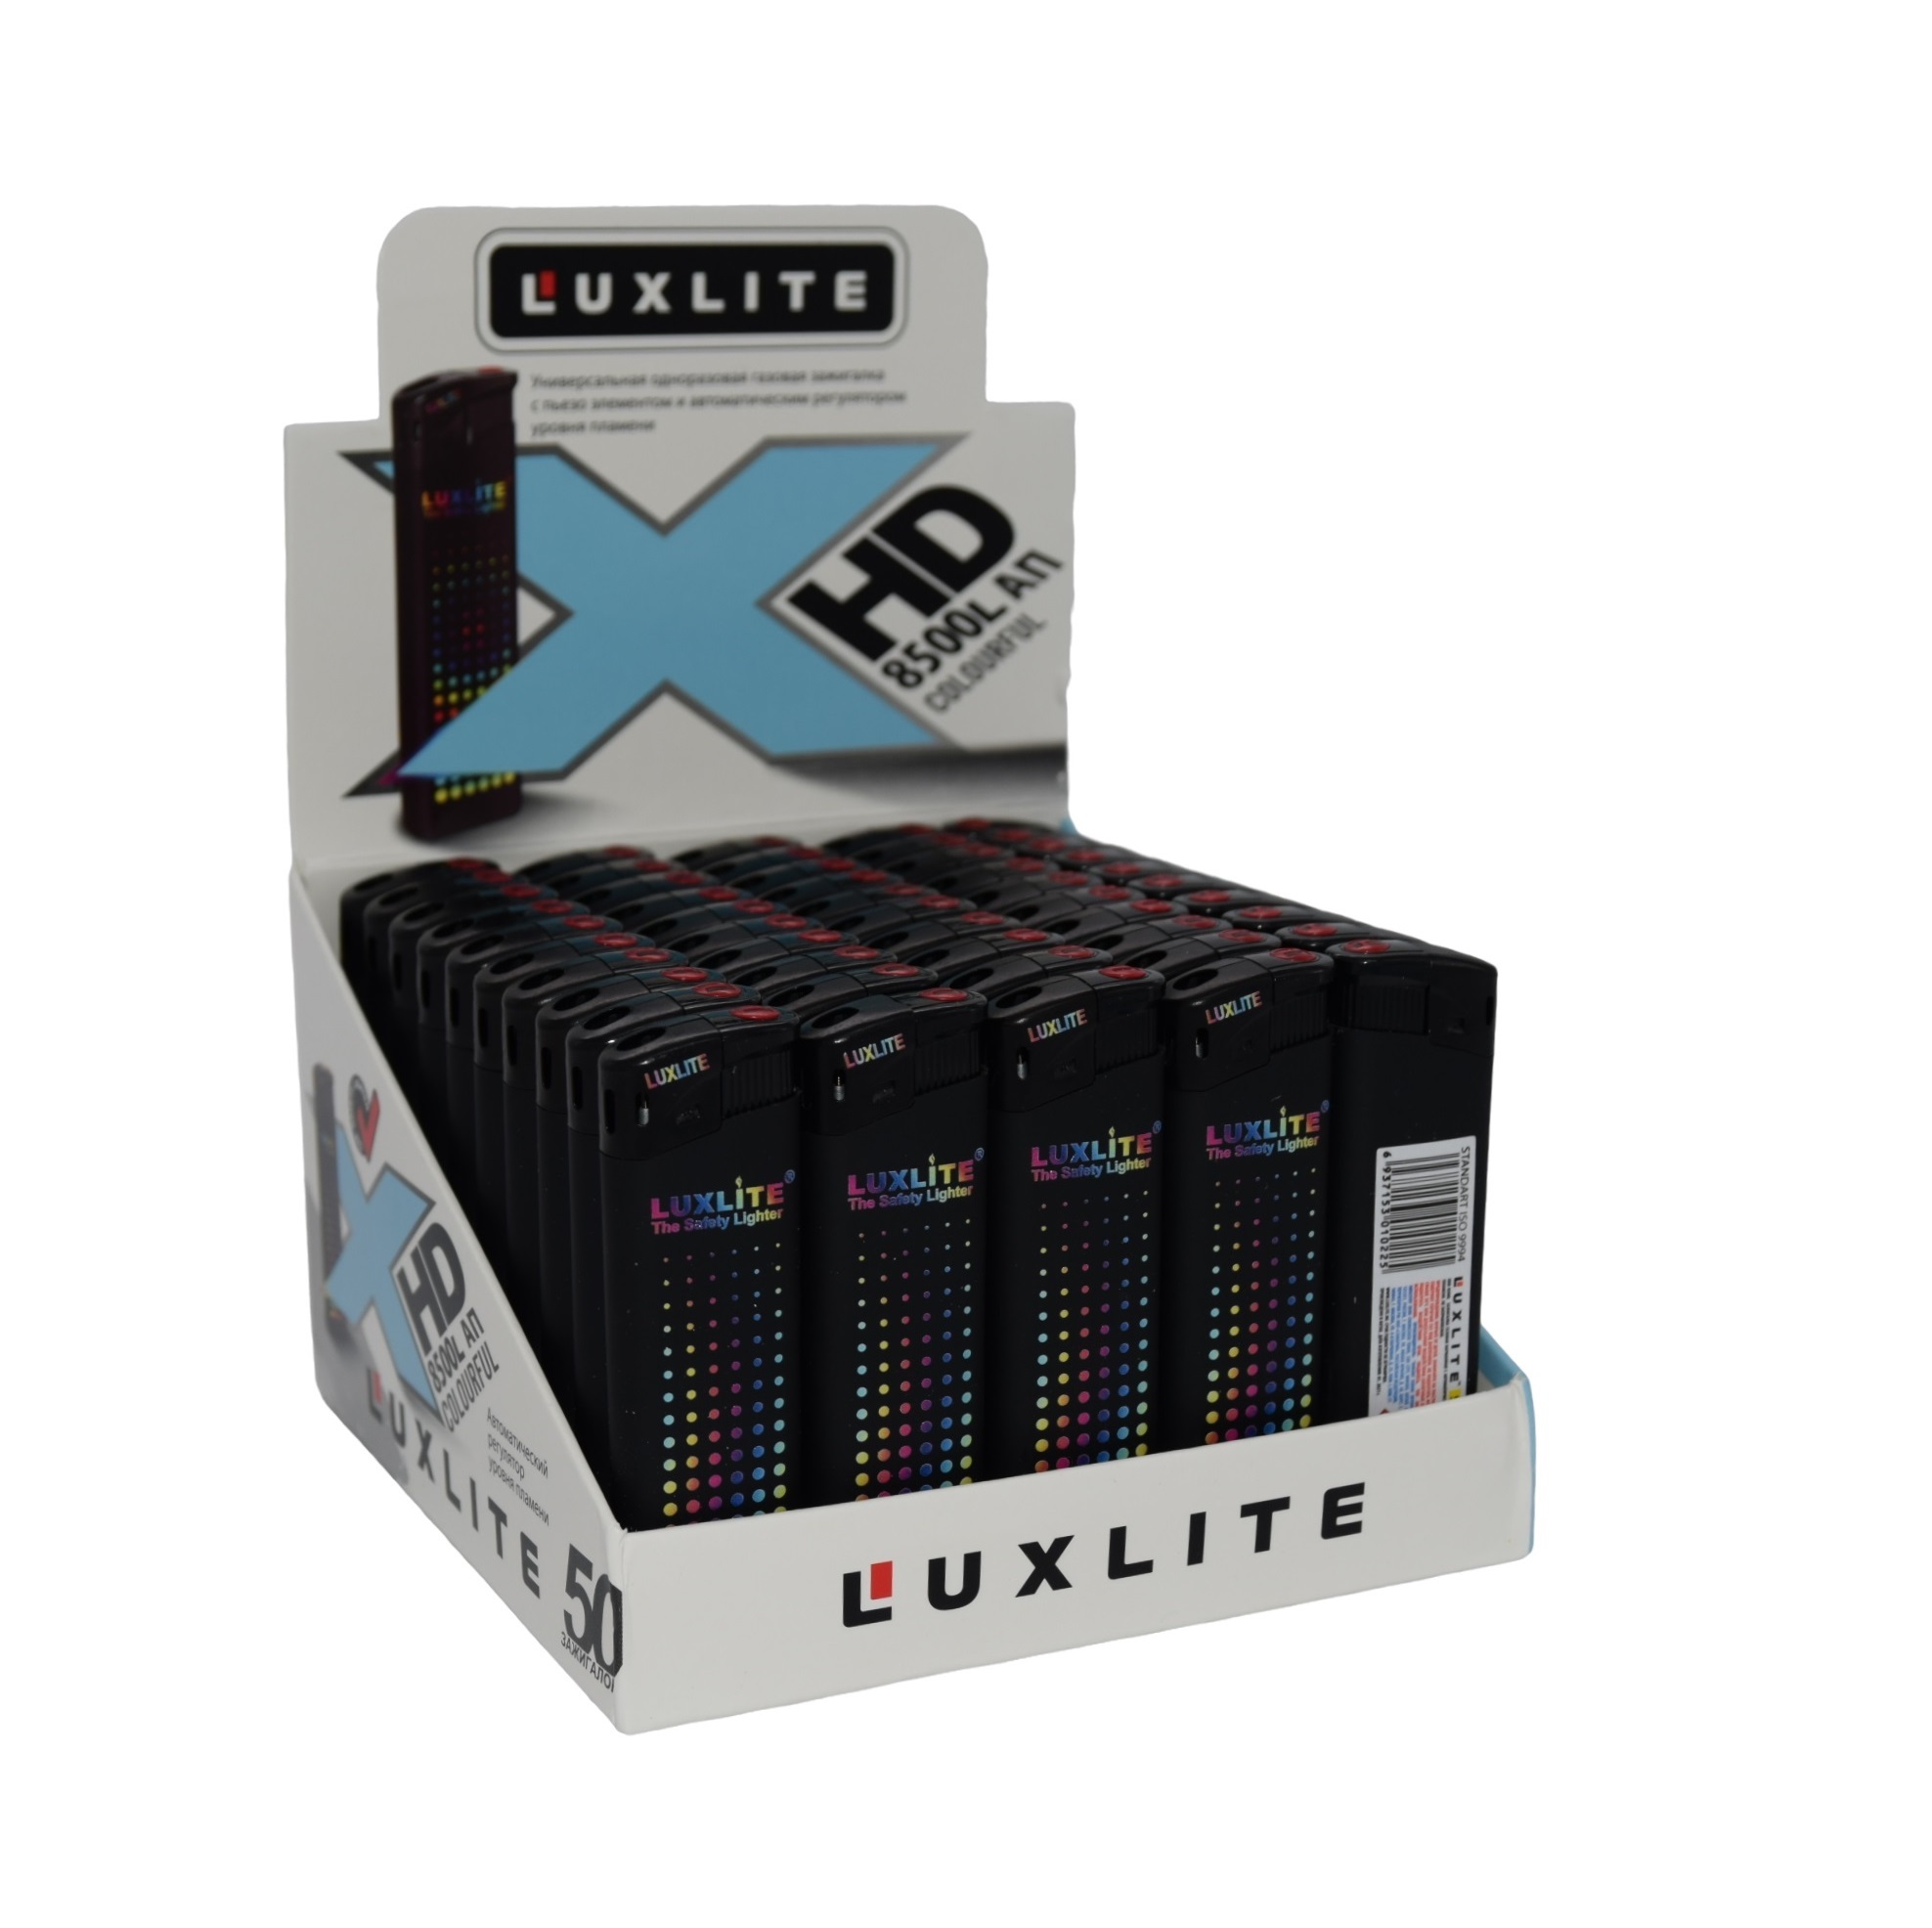  Luxlite пьезо 8500L АП COLOURFUL, 50 шт. (1 блок) -  с .